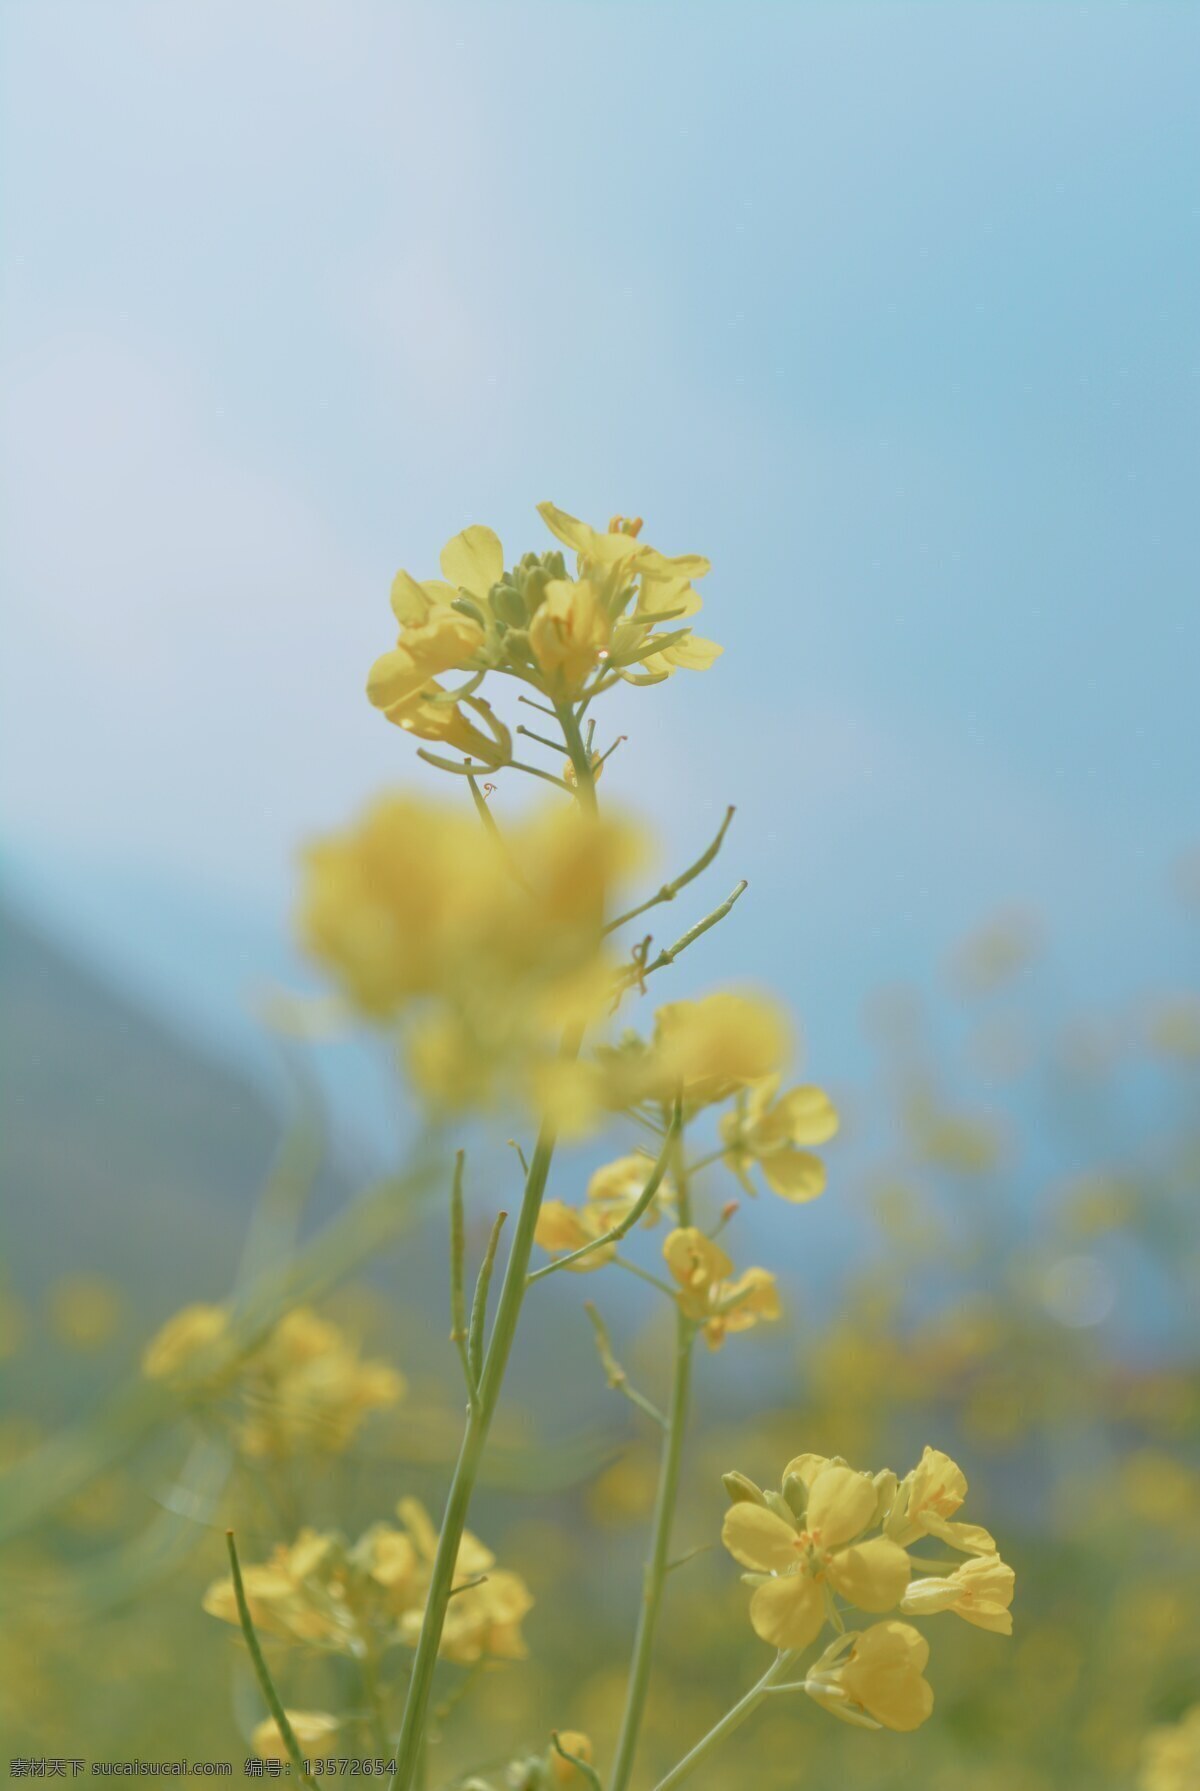 油菜花图片 油菜花 黄色的花 蓝天 黄花 远山近花 自然景观 田园风光